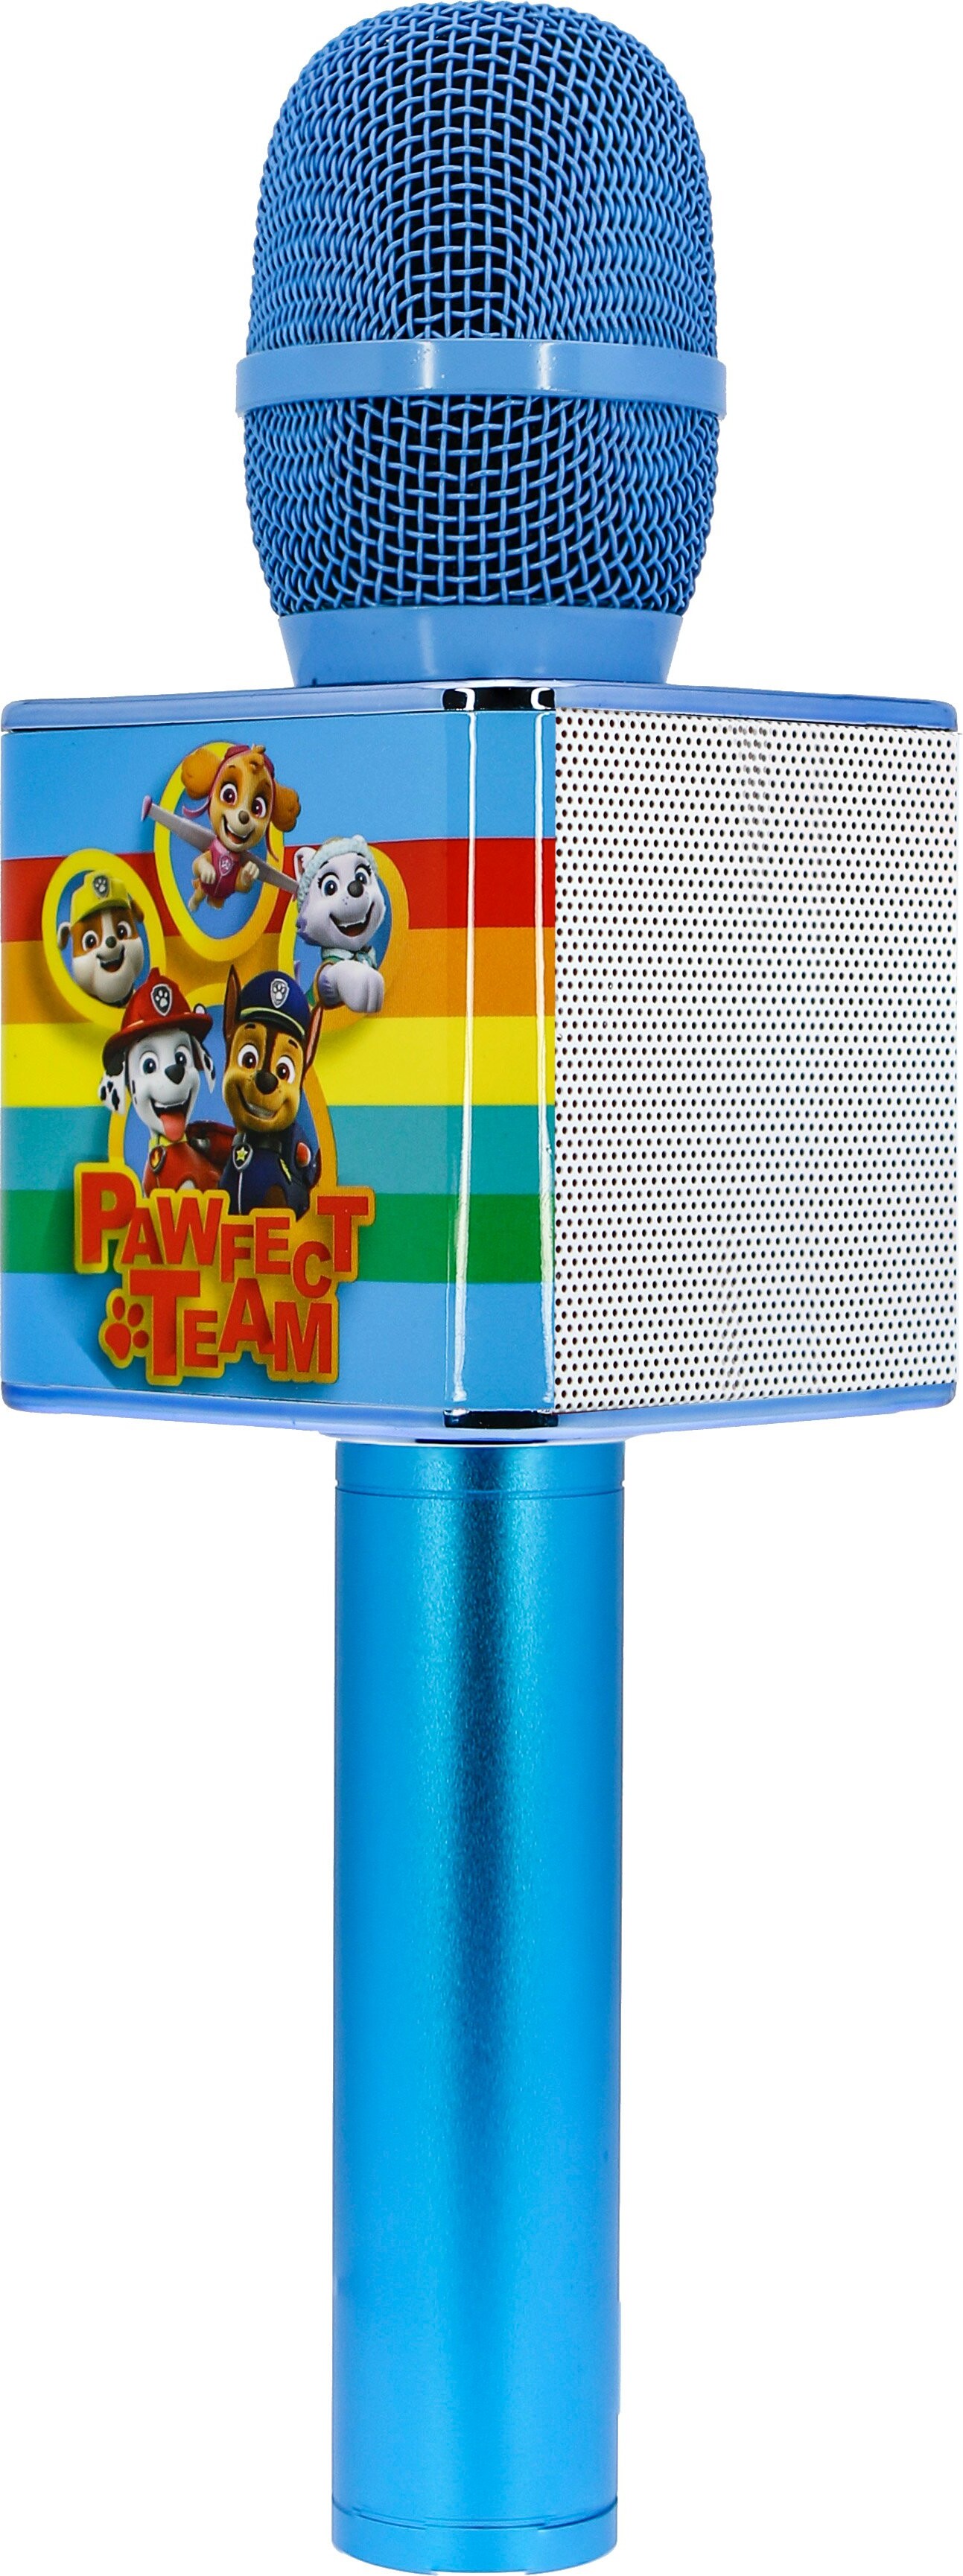 Billede af OTL - Karaoke Mikrofon med Højtaler - Paw Patrol - Blå